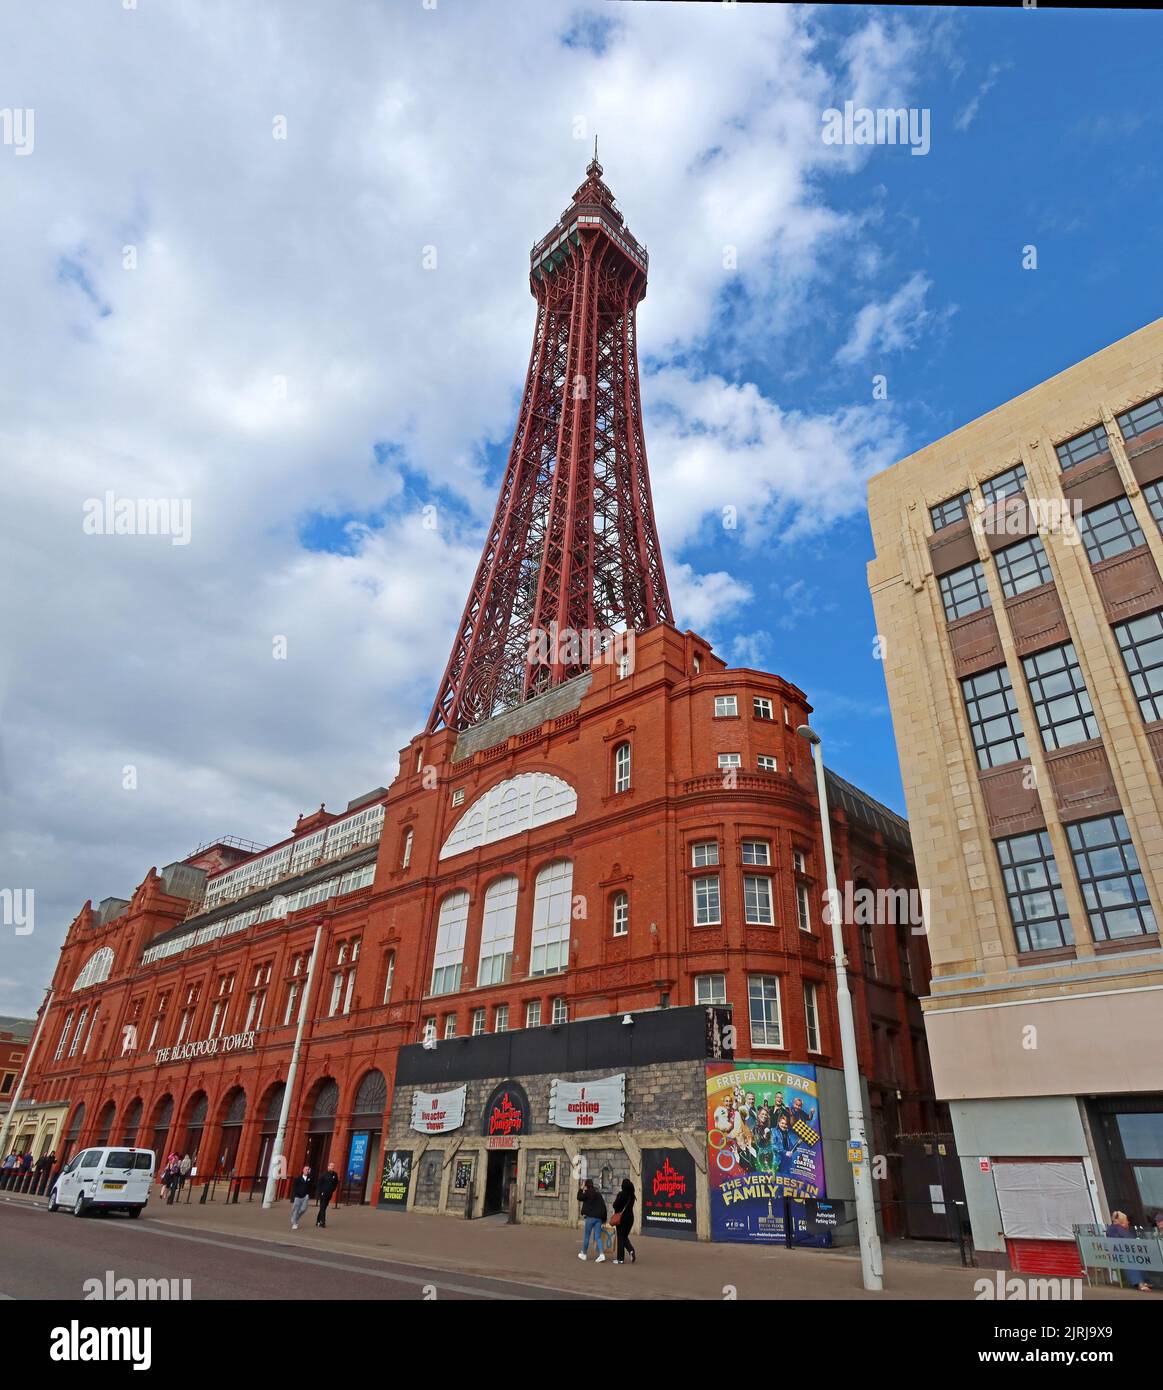 The Blackpool Tower, célèbre icône, sur la promenade, Blackpool station du nord-ouest, Lancashire, Angleterre, Royaume-Uni, FY1 4BJ Banque D'Images